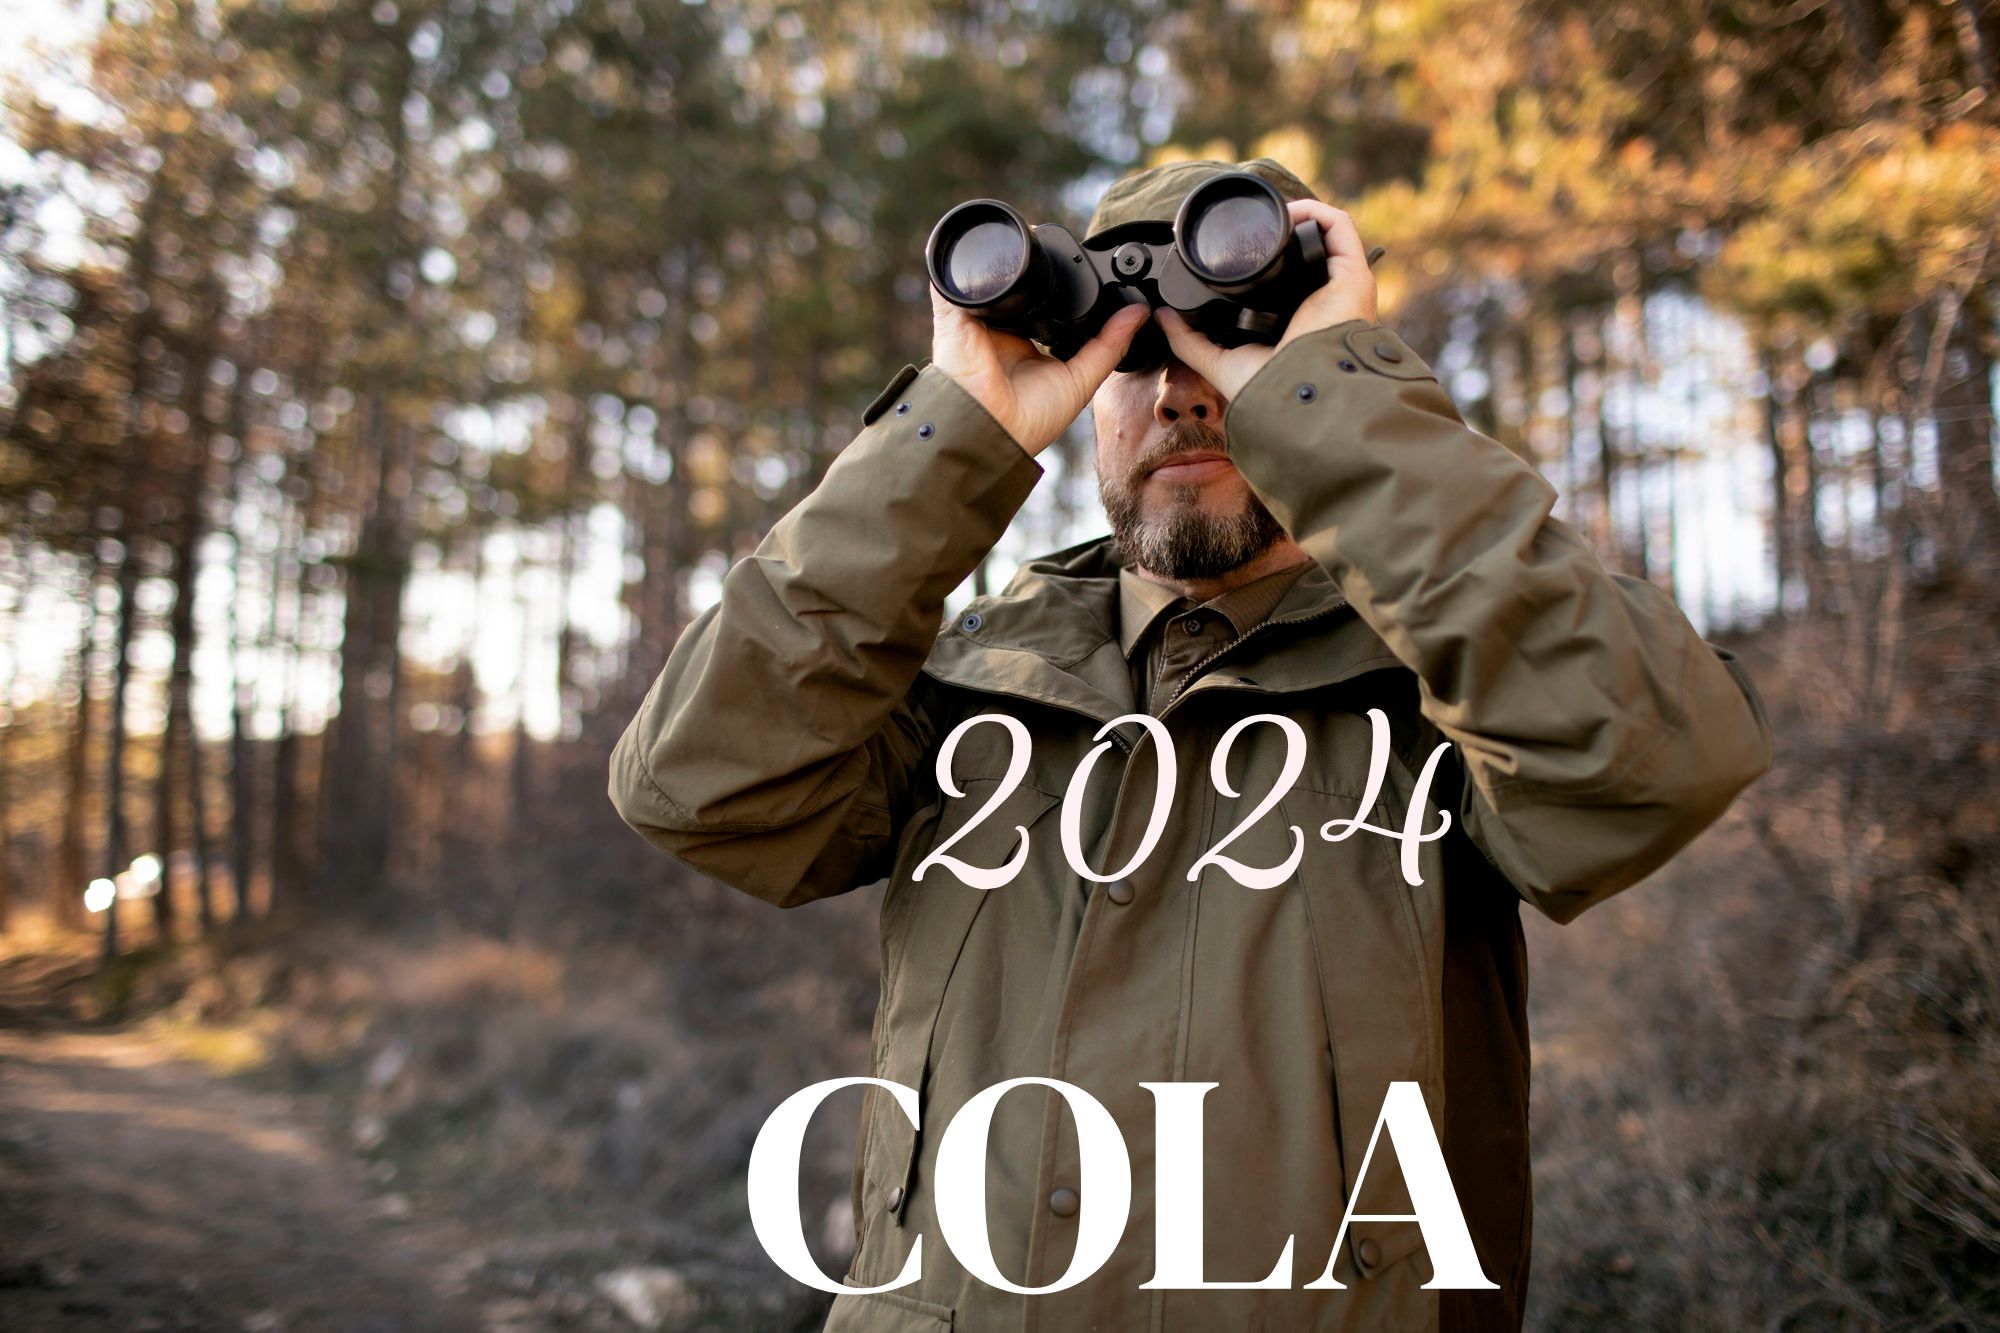 Cola 2024